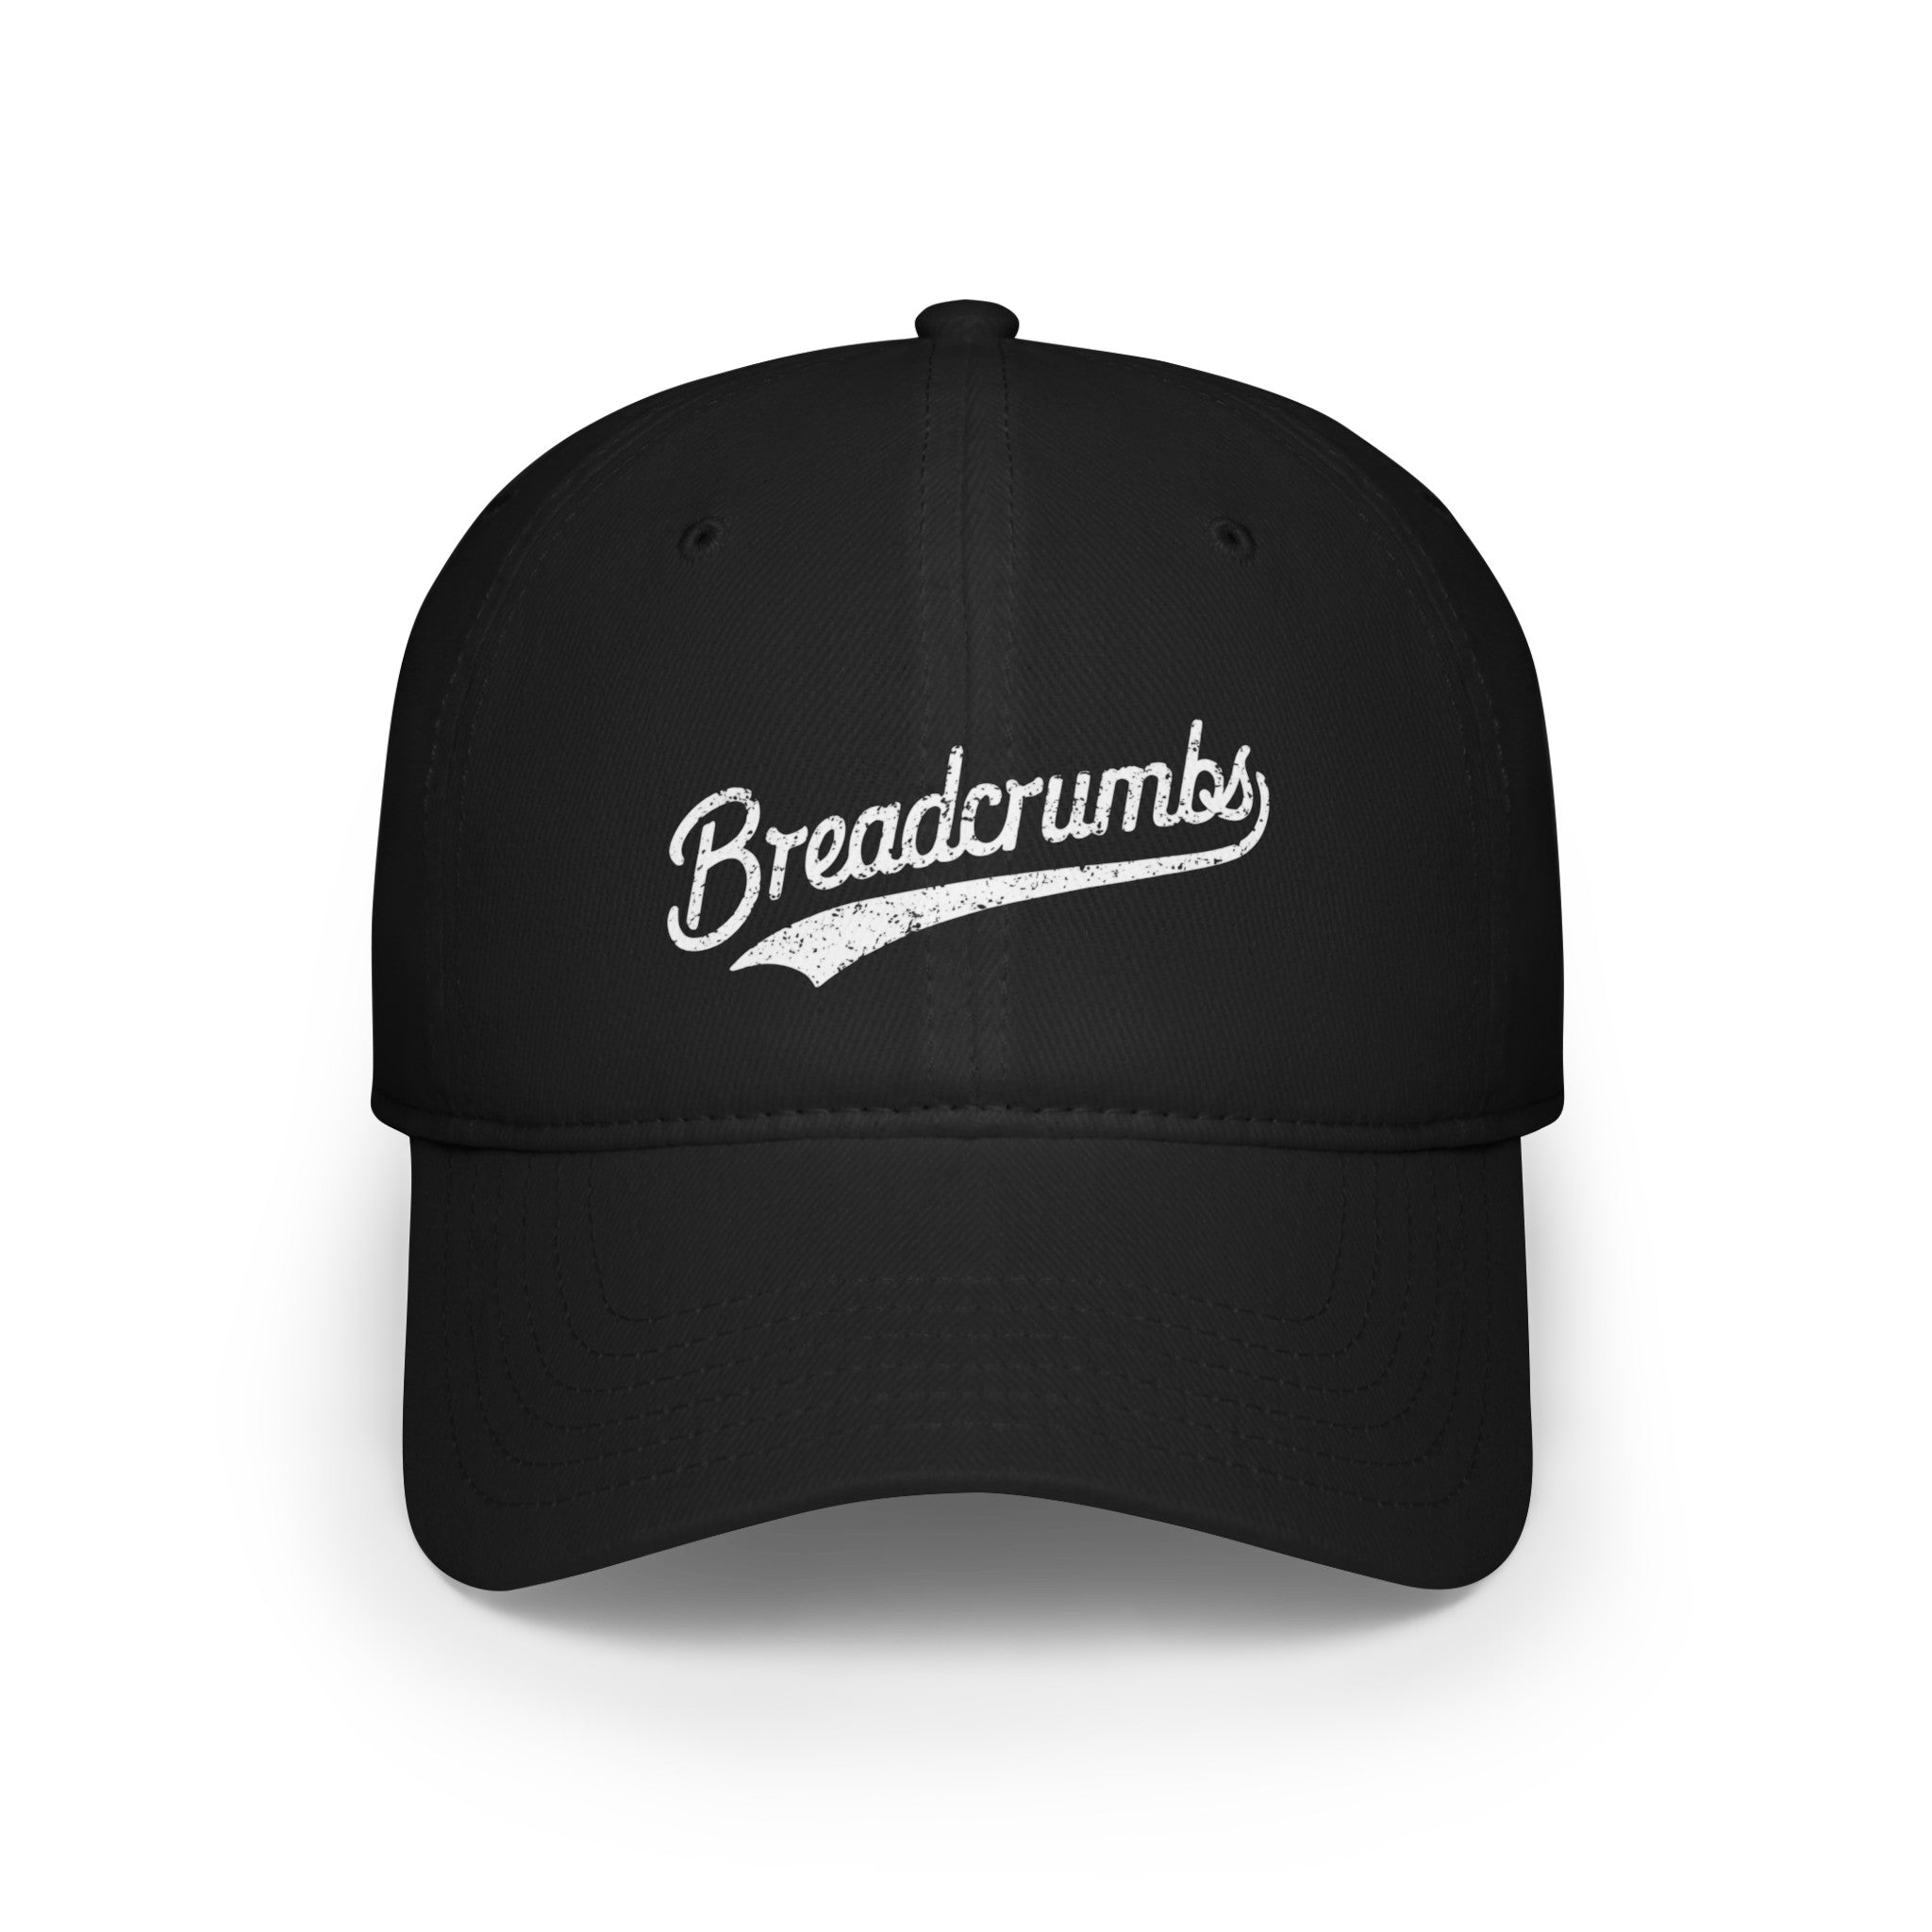 Breadcrumbs - Hat